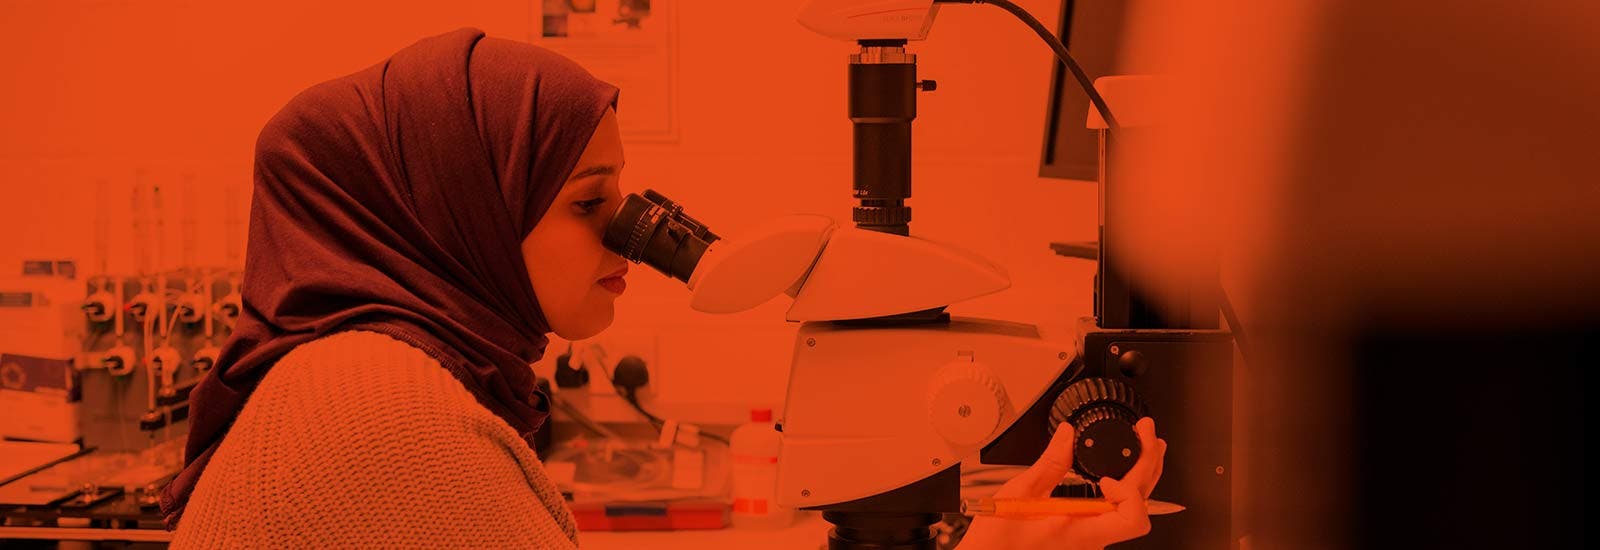 萨塞克斯大学的一名学生在使用显微镜